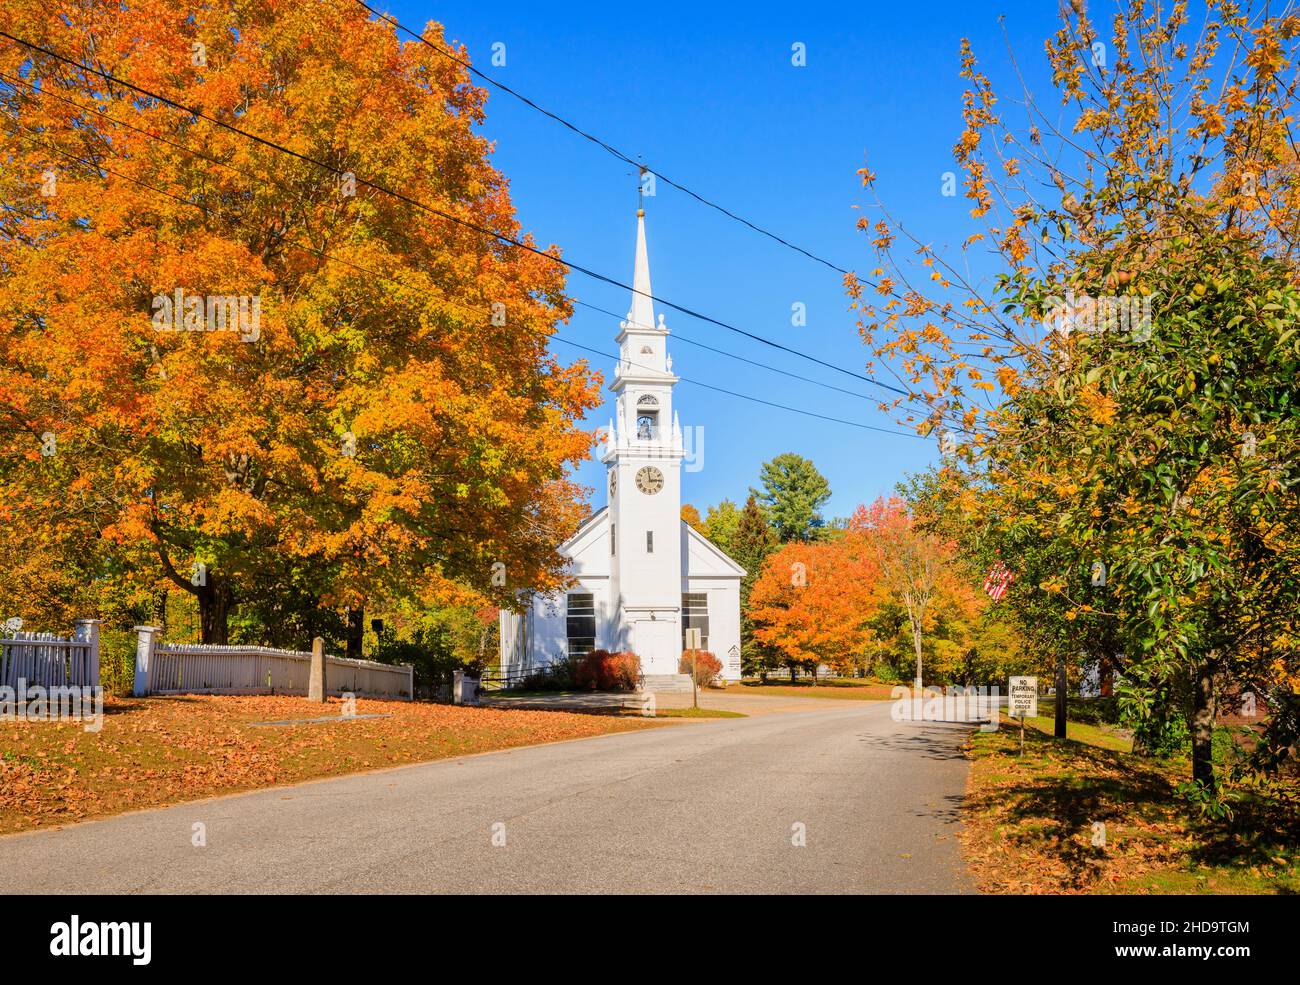 Le style de la renaissance grecque Old Meeting House Baptist Church in Center Sandwich, un village dans le New Hampshire, la Nouvelle-Angleterre, les États-Unis en automne / couleurs d'automne Banque D'Images